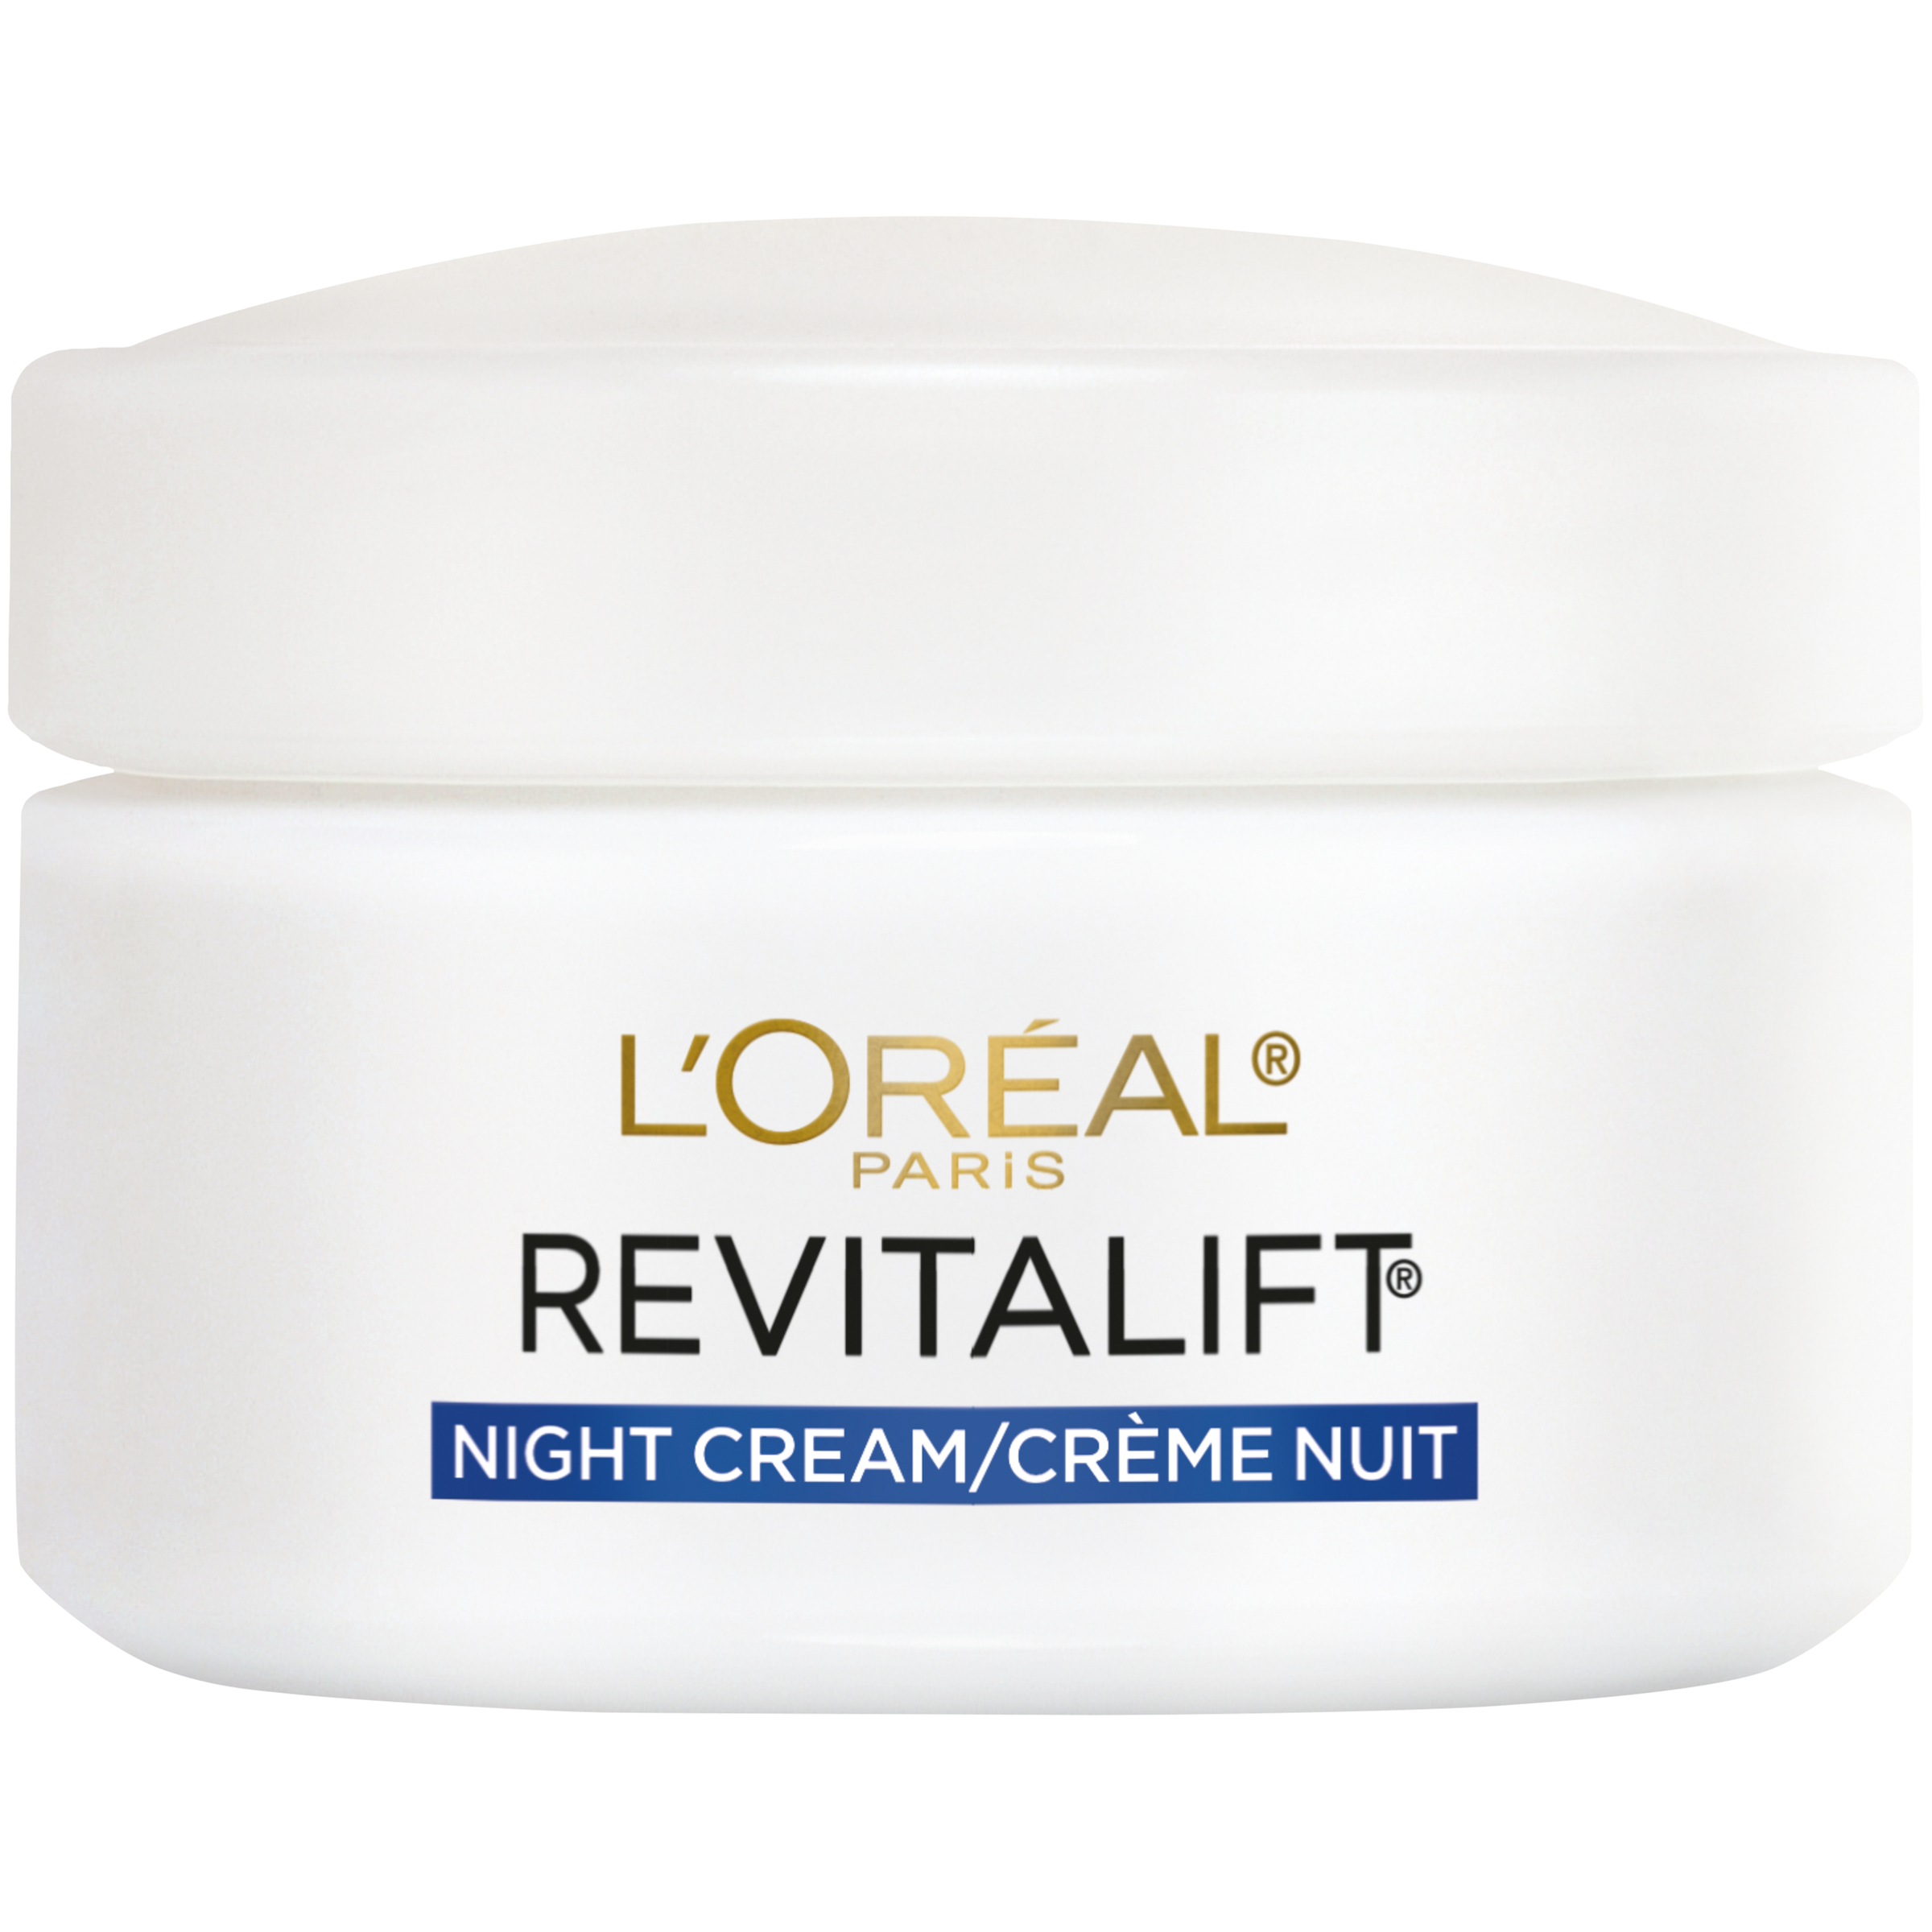 L'Oreal Skin Expertise RevitaLift Complete Night Cream, 1.7 oz (48 g)